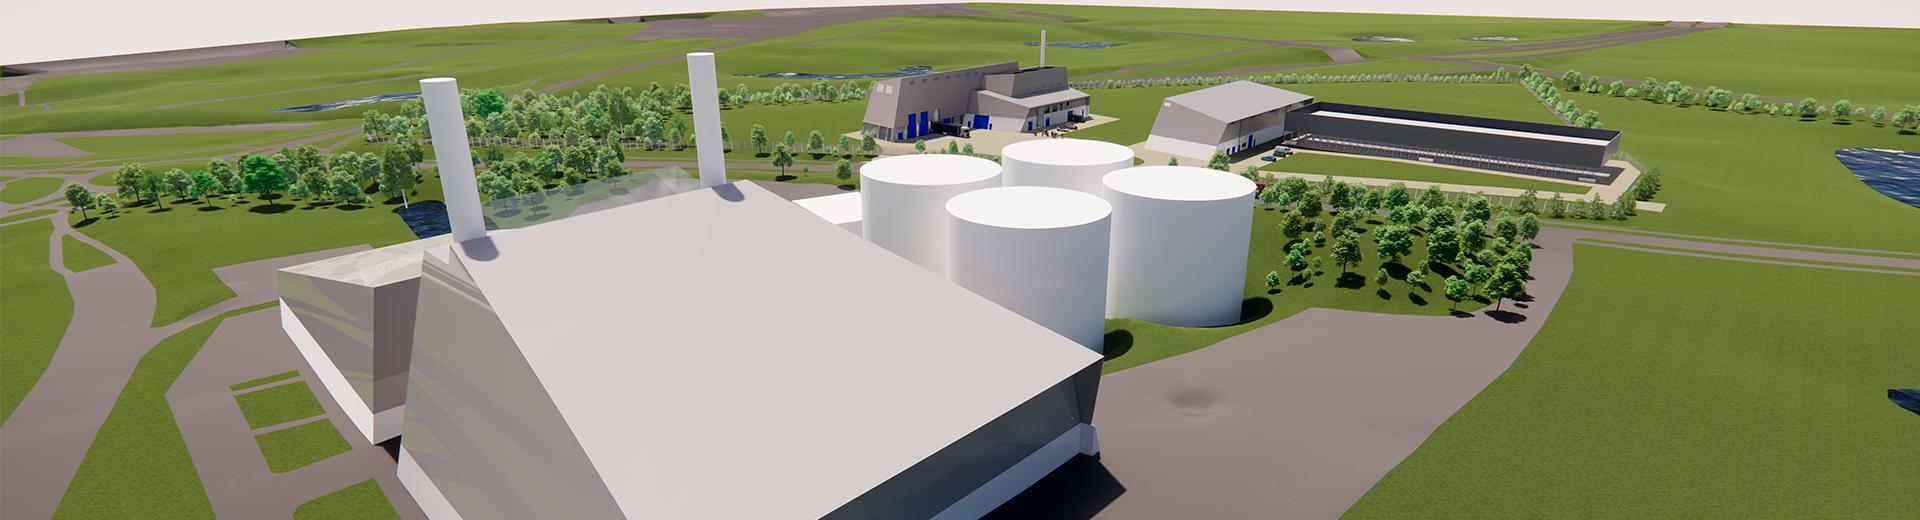 Visualisering af kraftvarmeværket, det nye biomasseanlæg og det nye varmepumpeanlæg 